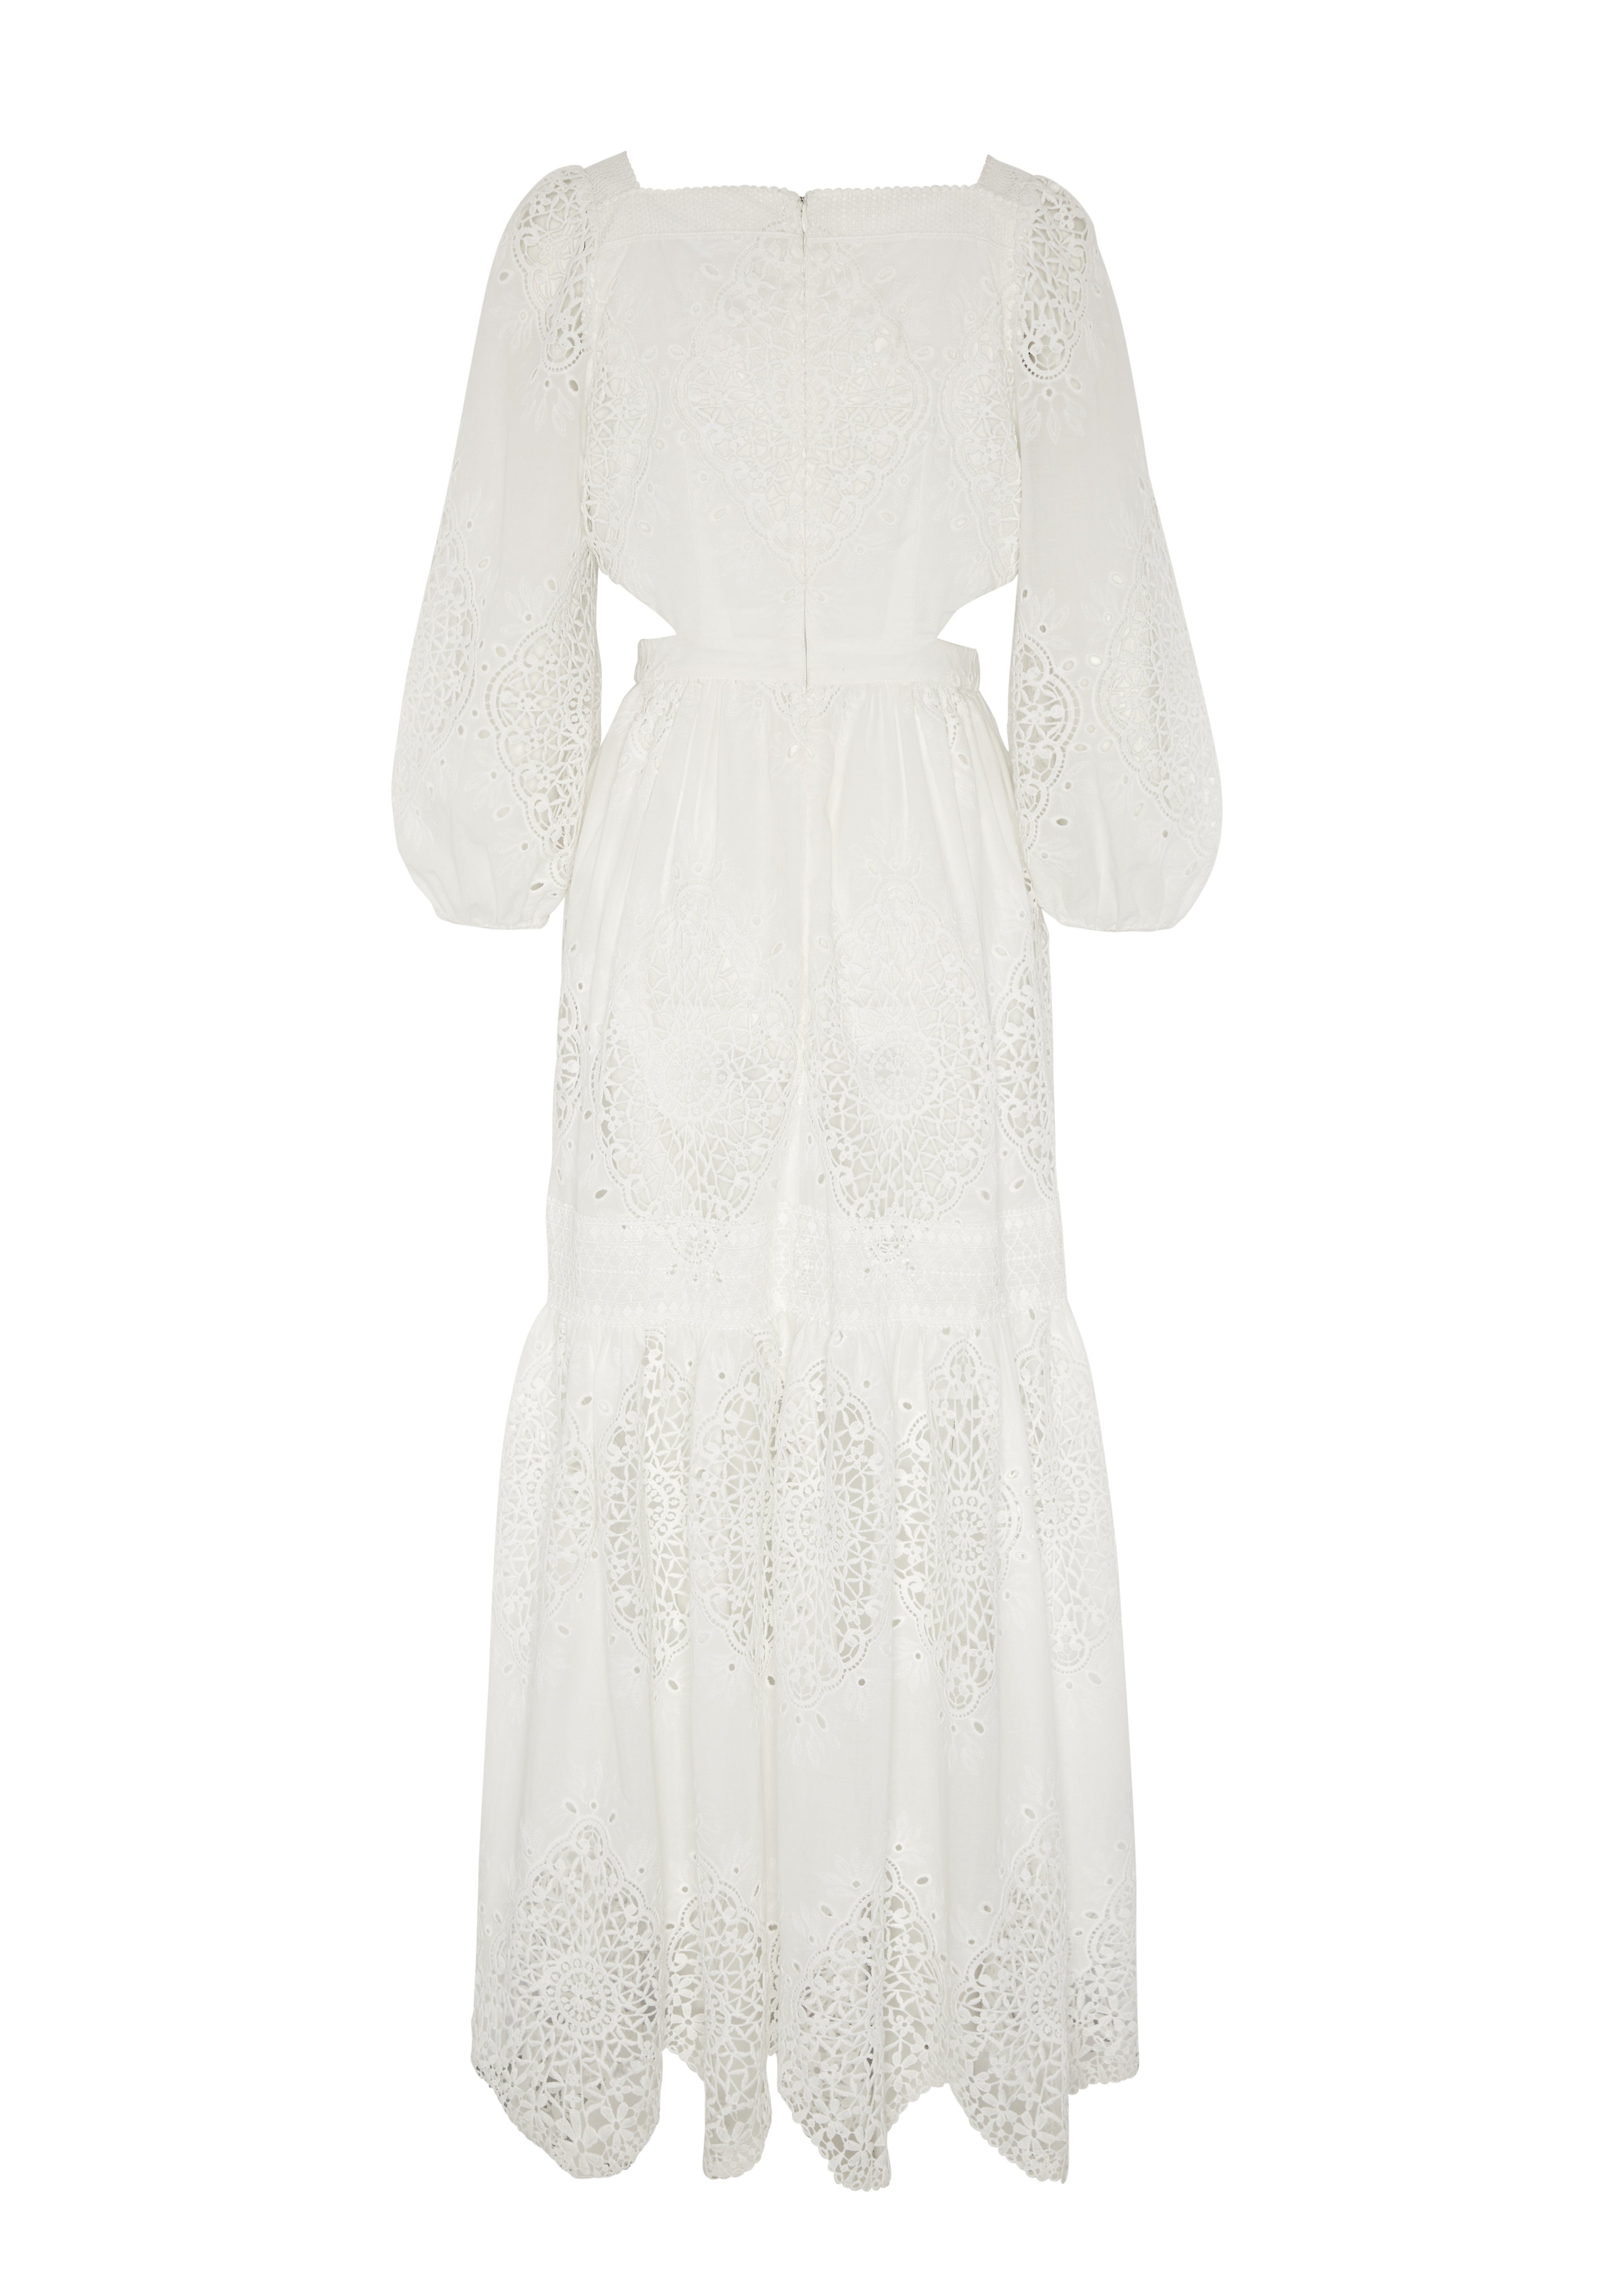 EVARAE CARA DRESS IN COTTON - SUGAR WHITE